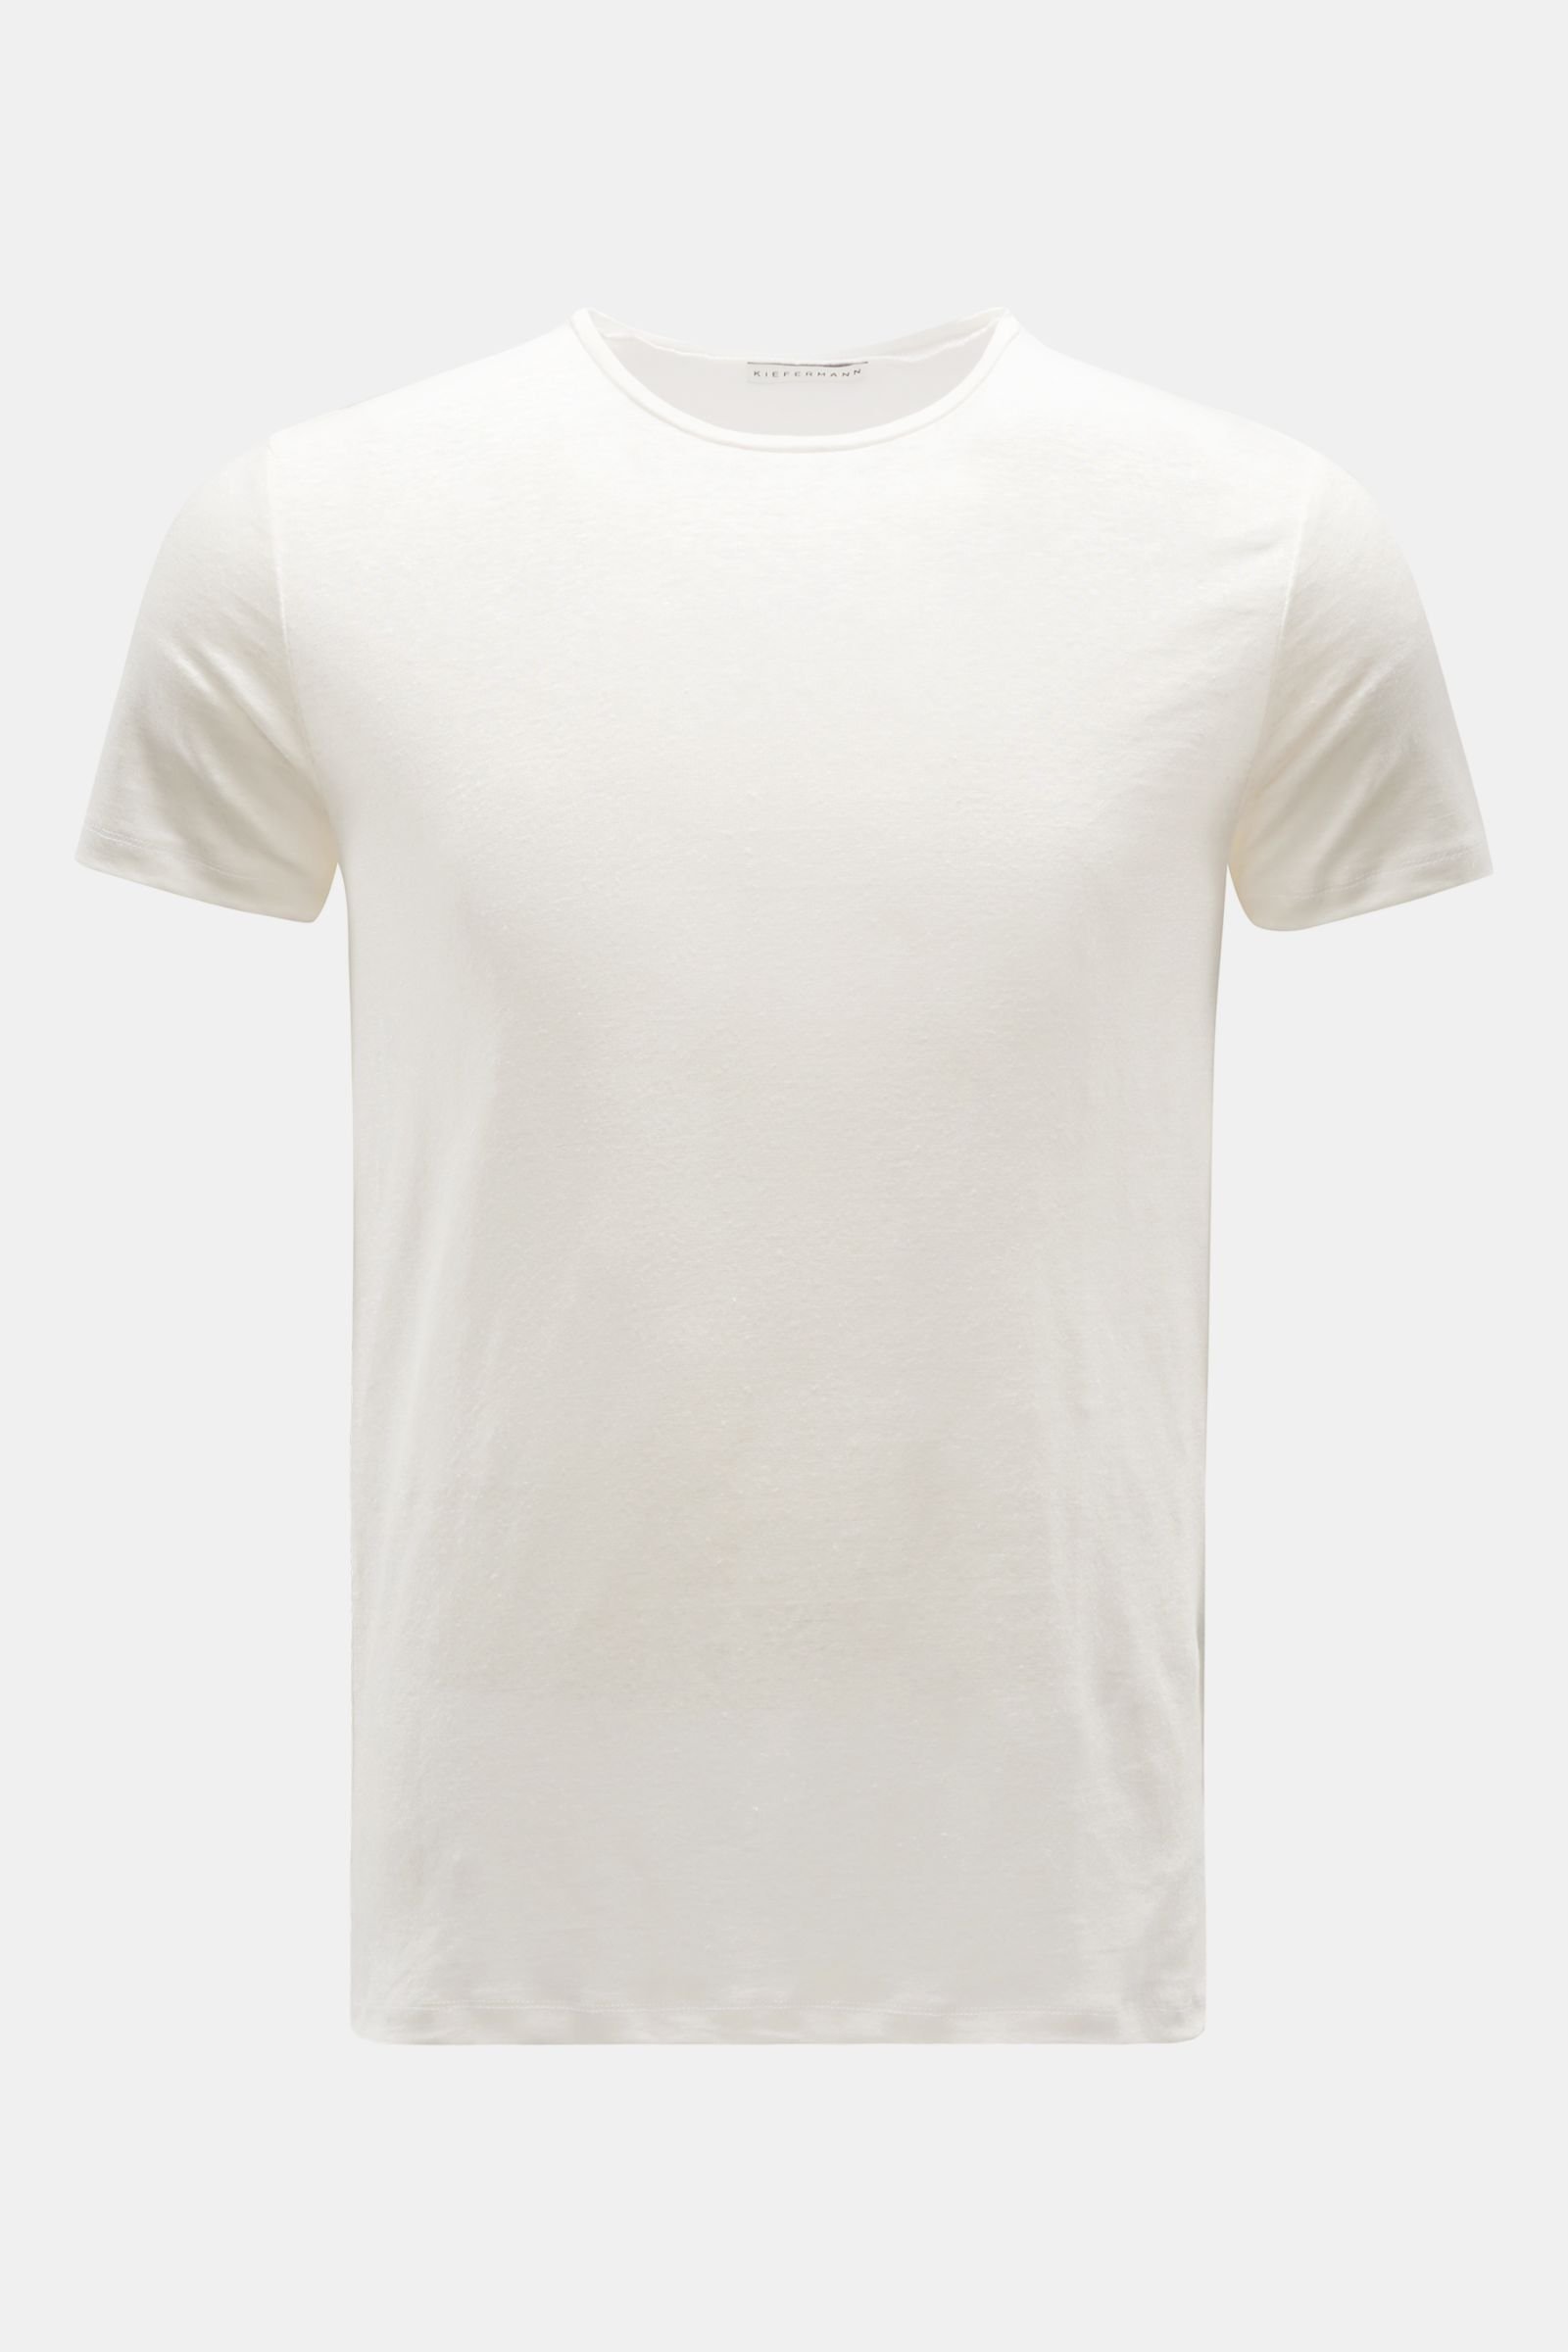 Leinen Rundhals-T-Shirt 'Laine' creme